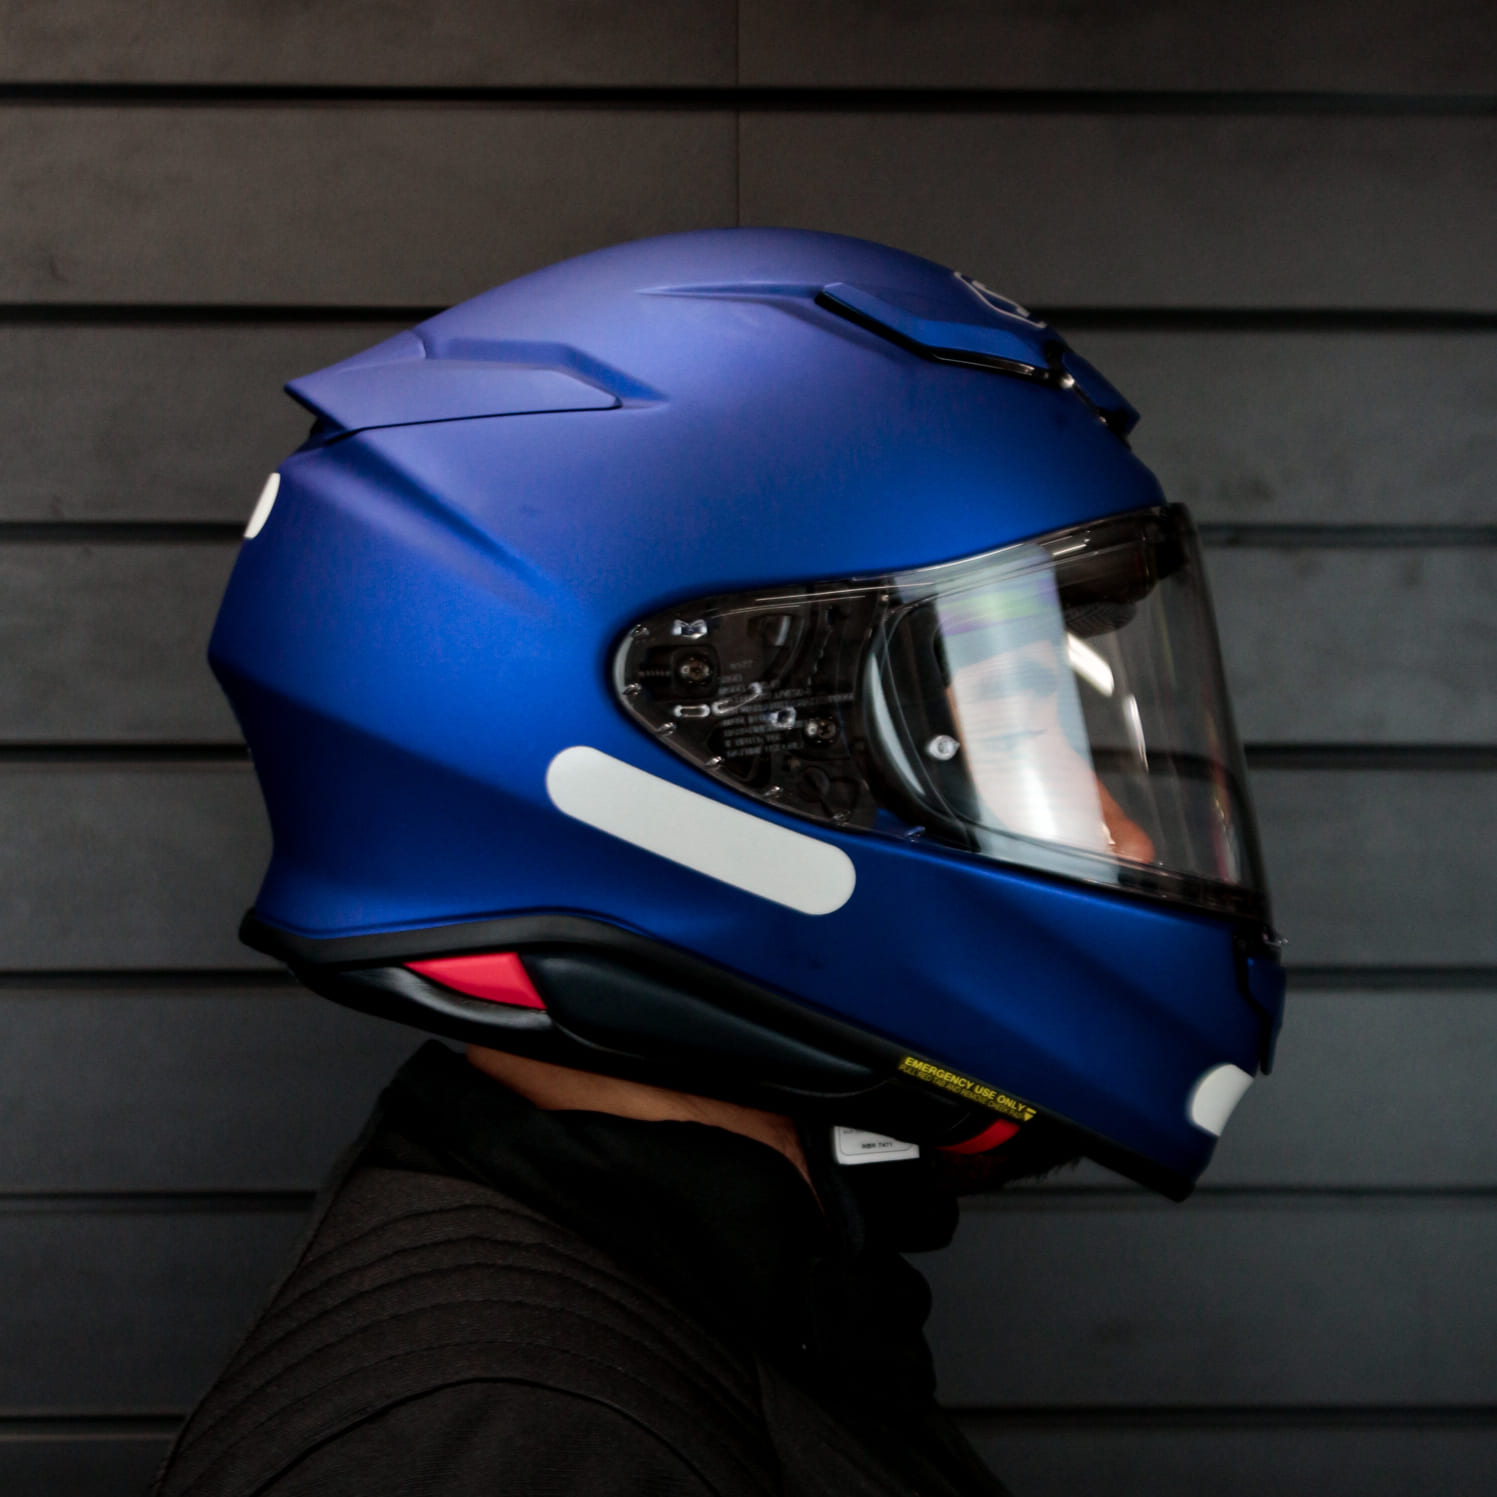 Capacete Shoei NXR2 Azul Metalico Fosco  - Nova Centro Boutique Roupas para Motociclistas